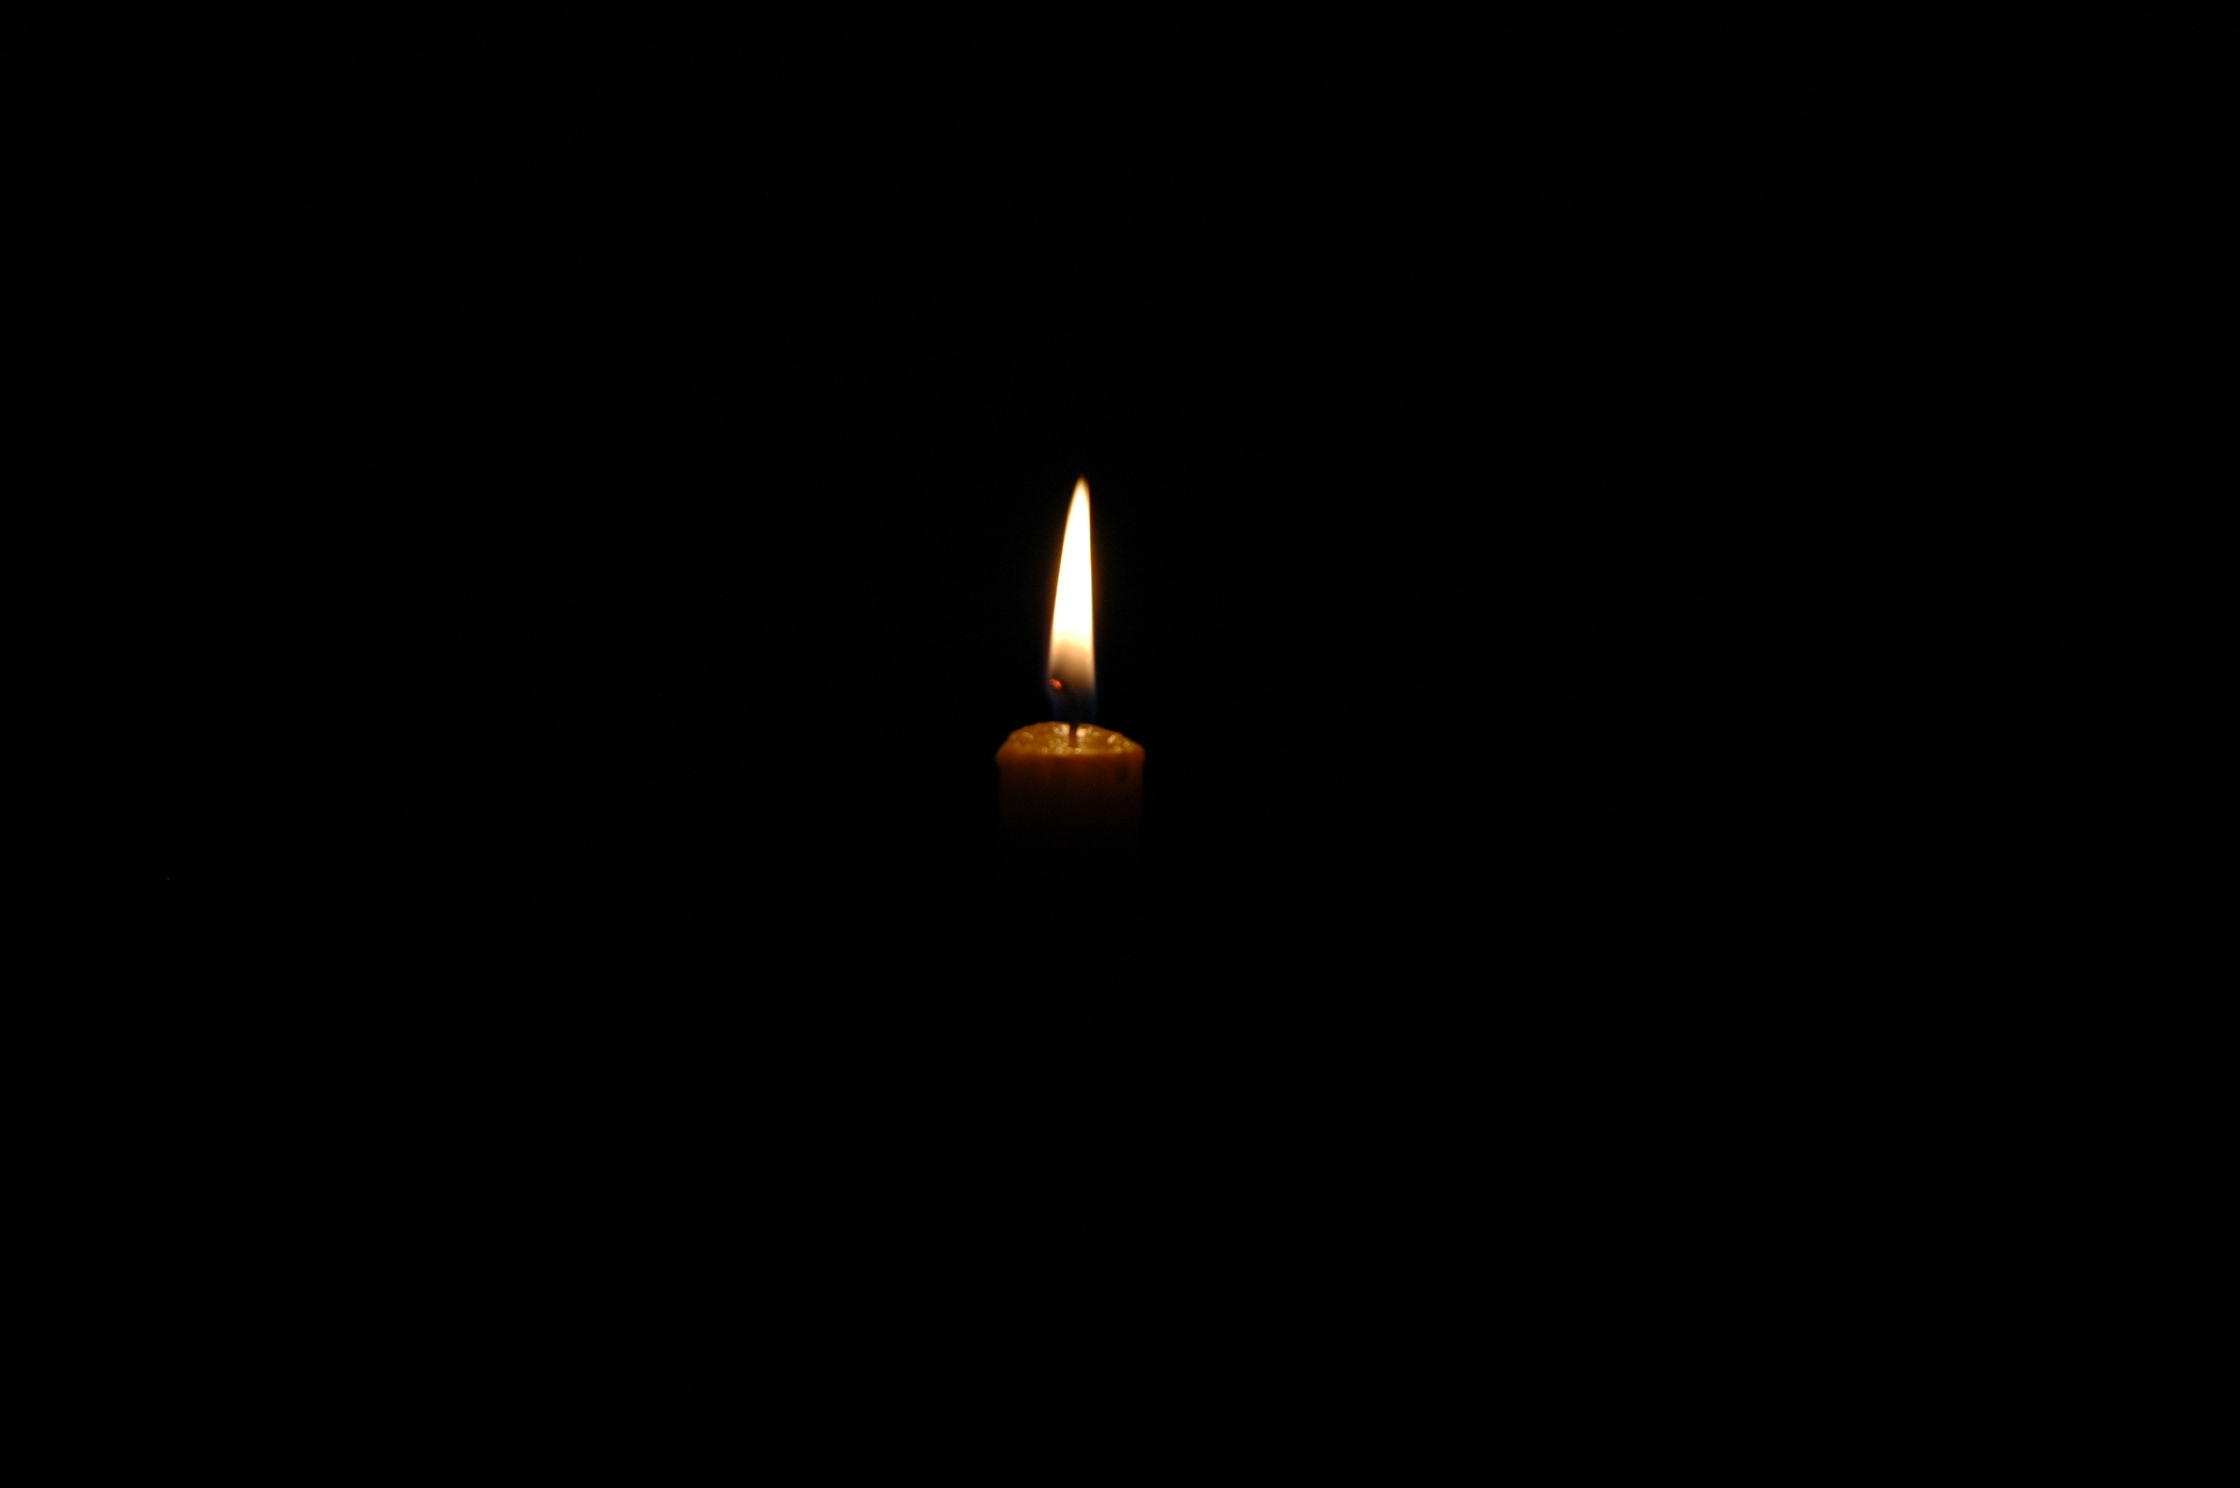 Видео свеча на черном фоне. Свеча в темноте. Горящая свеча в темноте. Свечка горит в темноте. Свечка на черном фоне.